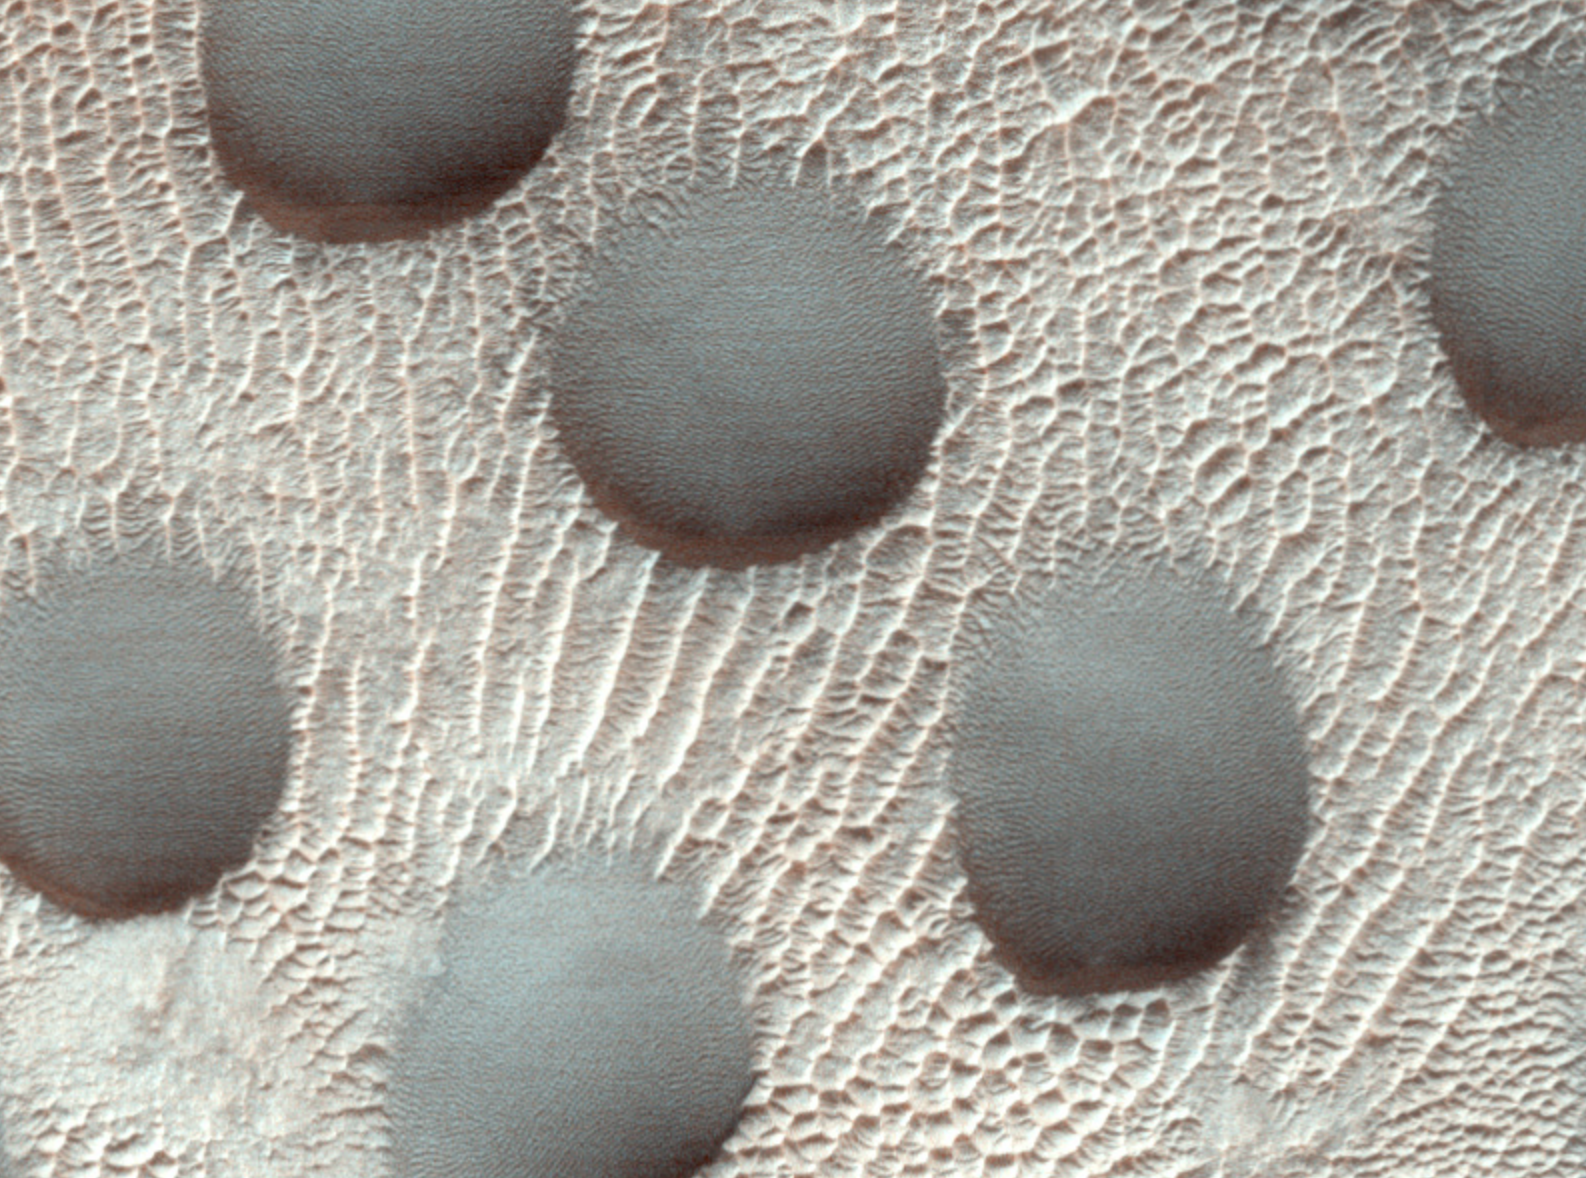 Unusual sand dunes on Mars-1